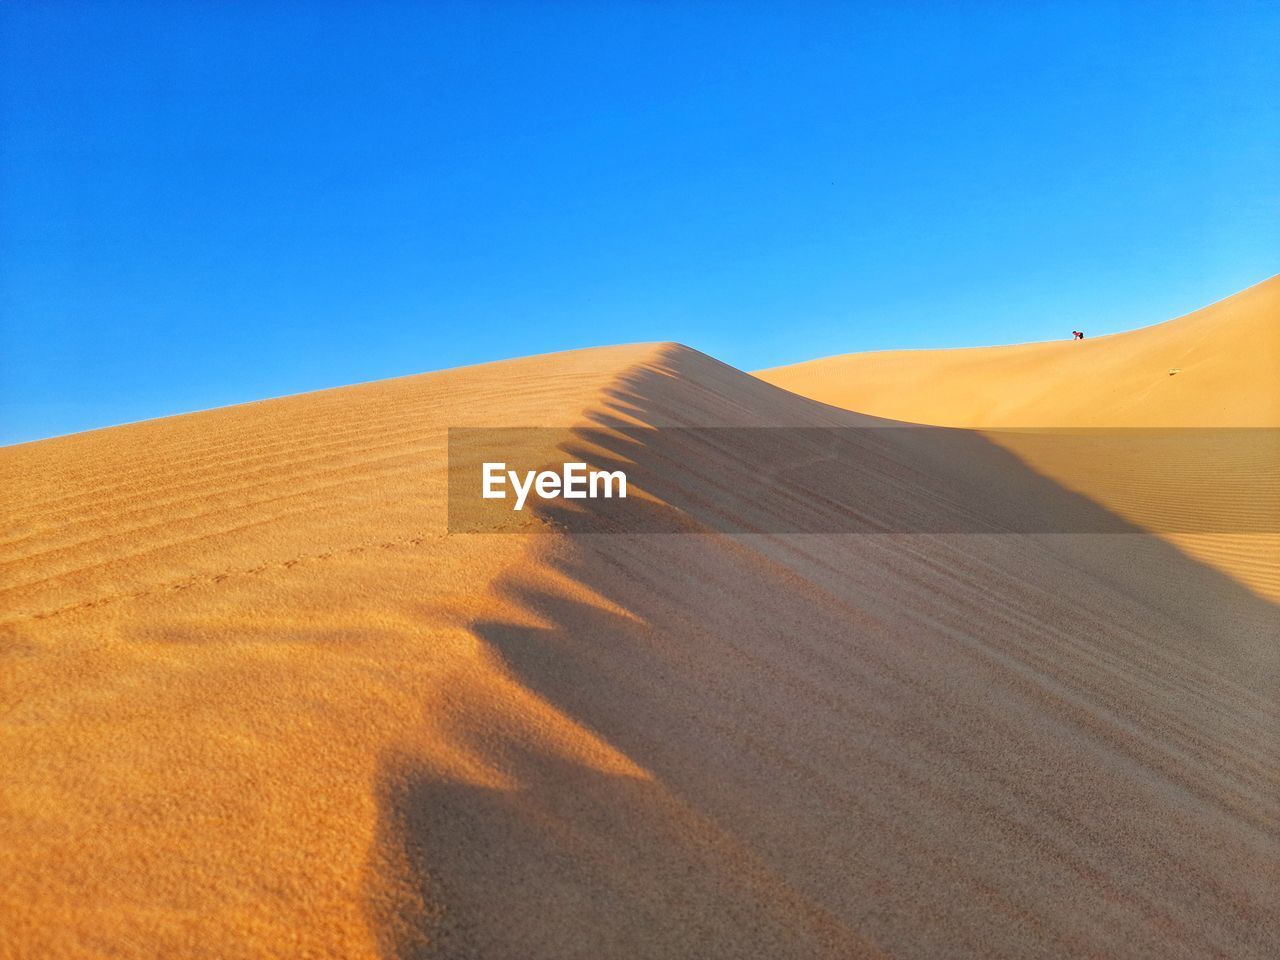 Hill of sand dunes on desert